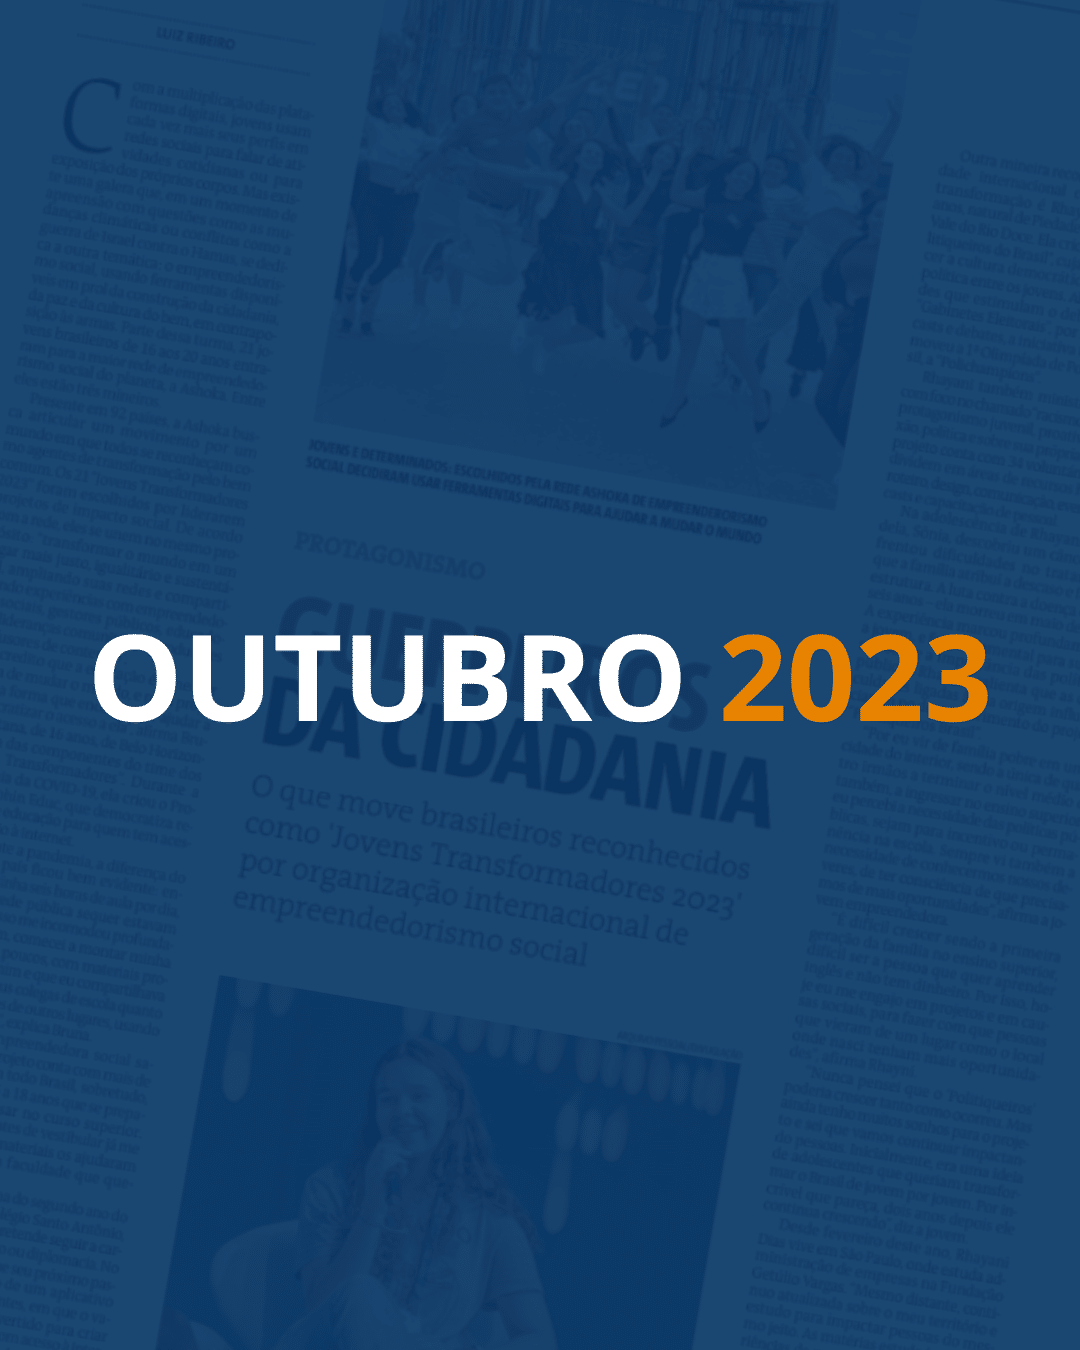 Fundo com uma página de jornal e um filtro azul escuro por cima. Em destaque, lê-se "OUTUBRO" em branco e "2023" em laranja